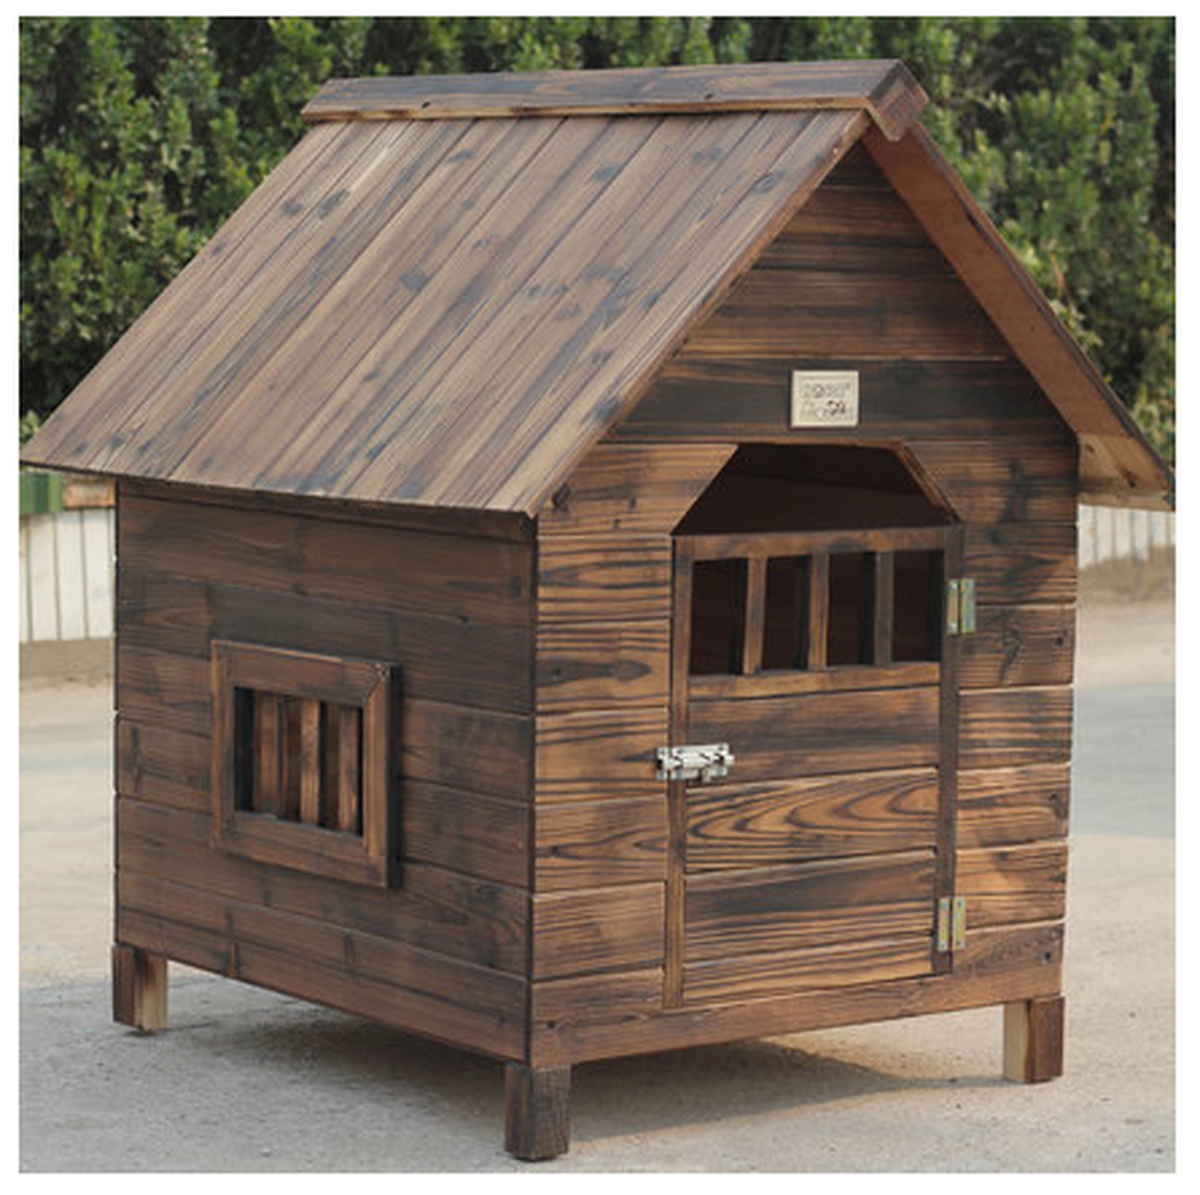 天然木製の犬小屋 サイズ 木で組立てる犬小屋 お屋根が取り外せてお掃除ラクラク ワンちゃんハウス Diyする犬小屋 ワンちゃん用セレクトショップワンワンダフル